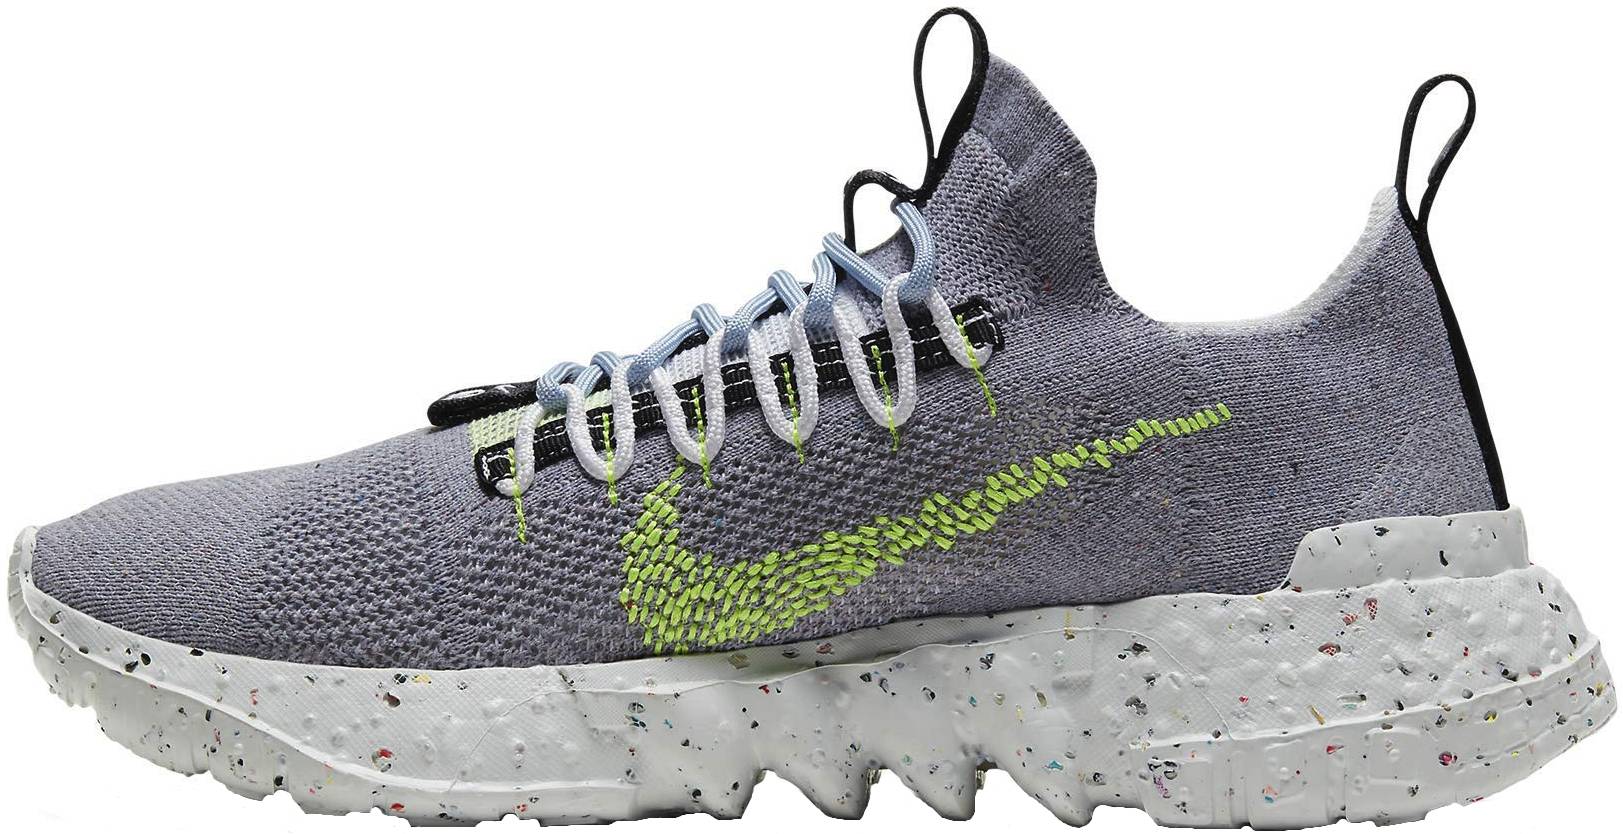 Nike Space Hippie 01 sneakers in grey + 